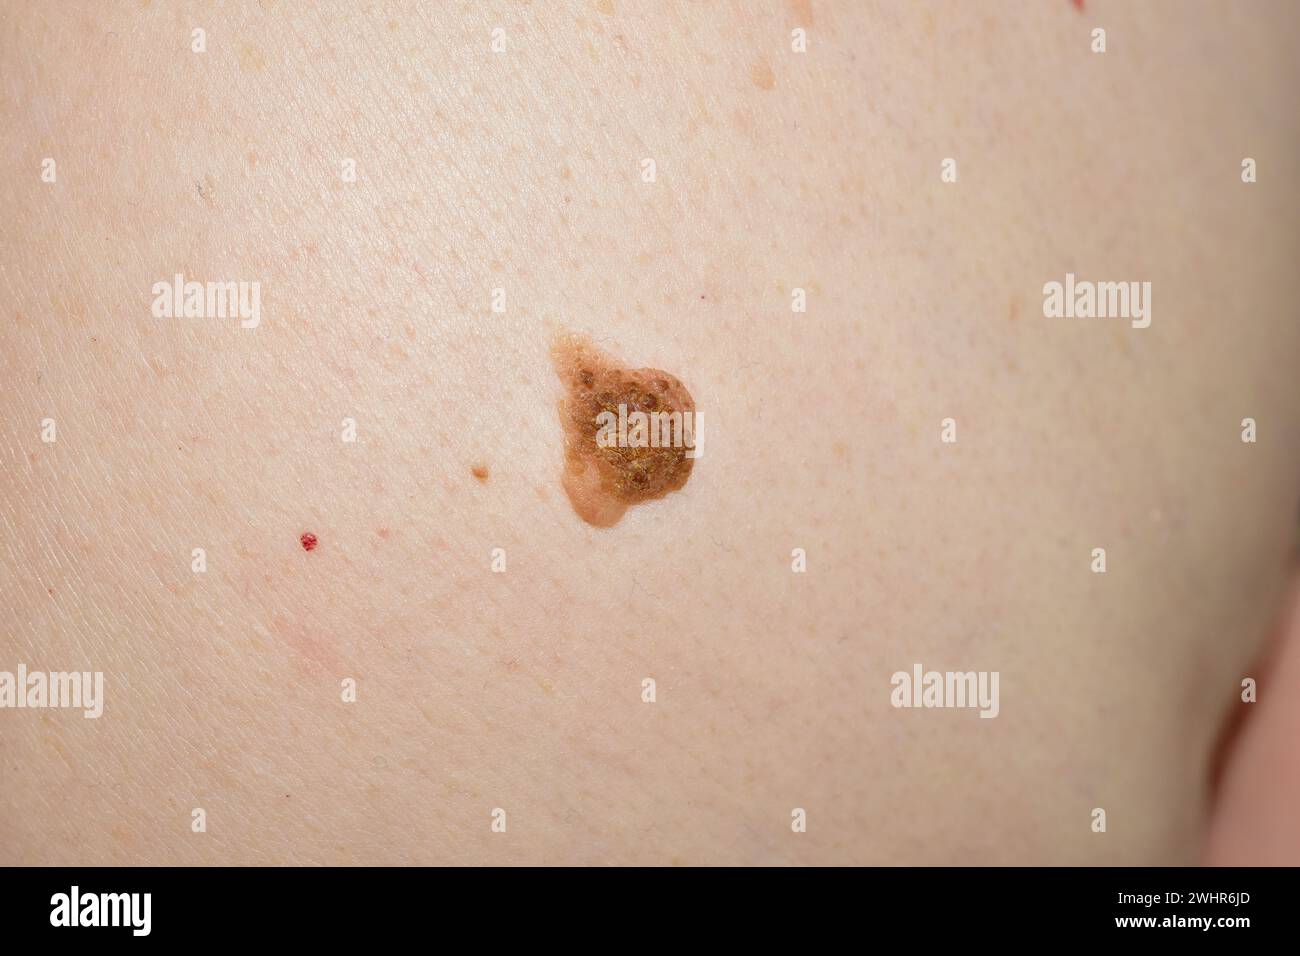 Un instantané d'une grosse taupe brune située sur le ventre d'une femme. Banque D'Images